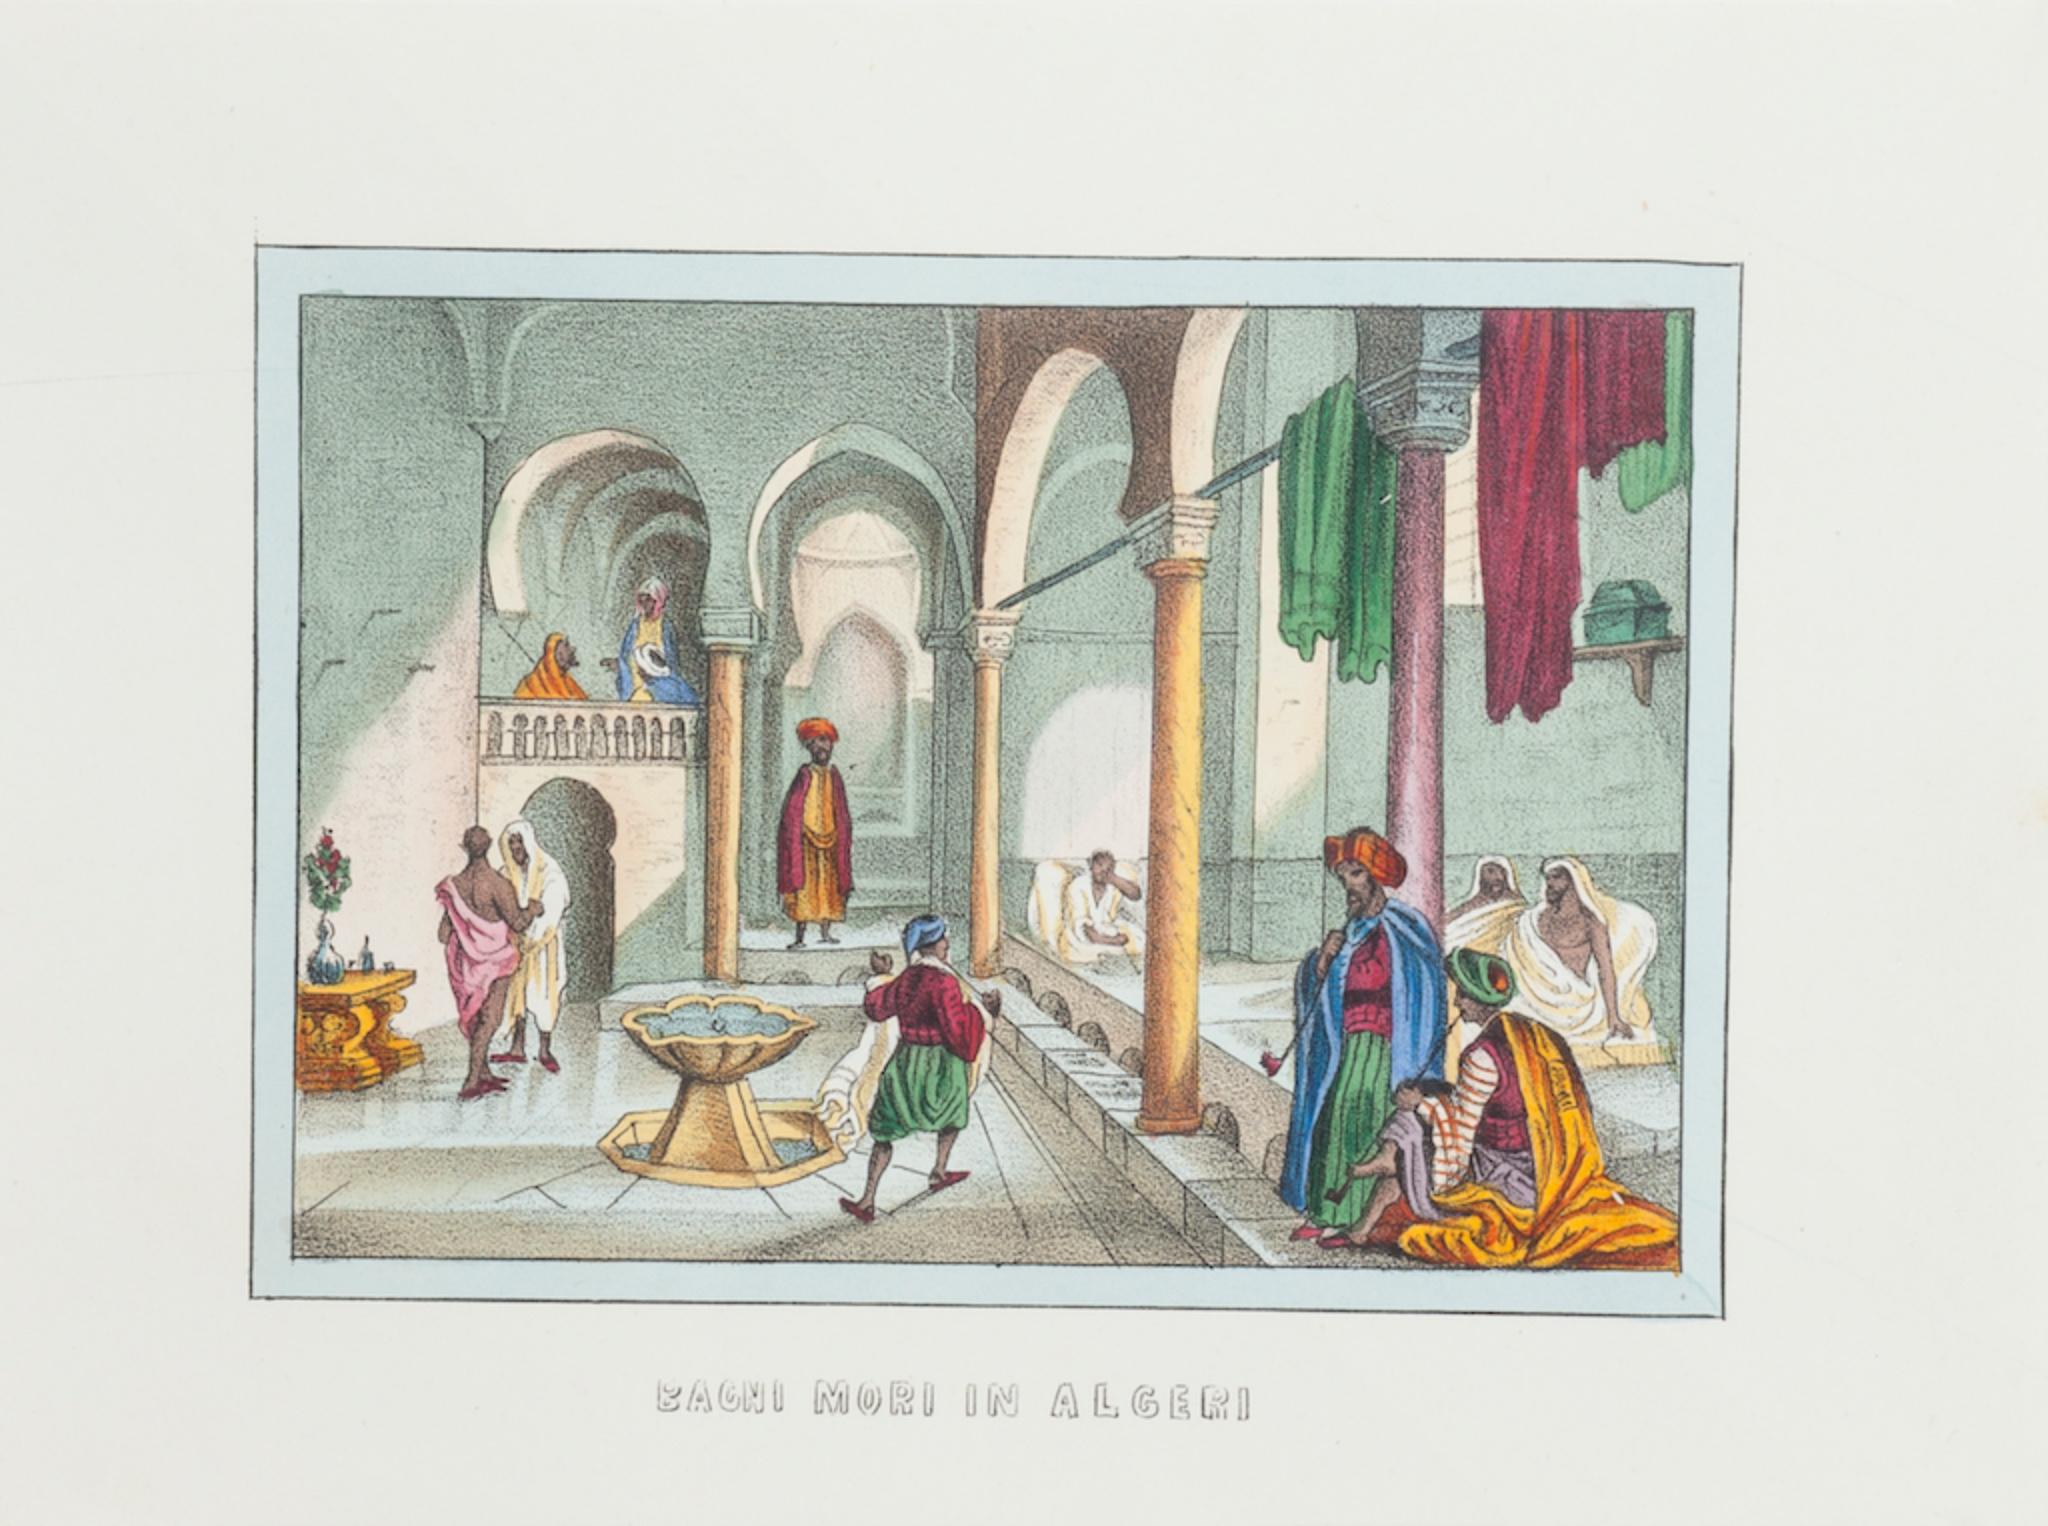 Unknown Figurative Print - Bath in Algeria - Original Lithograph - 1846